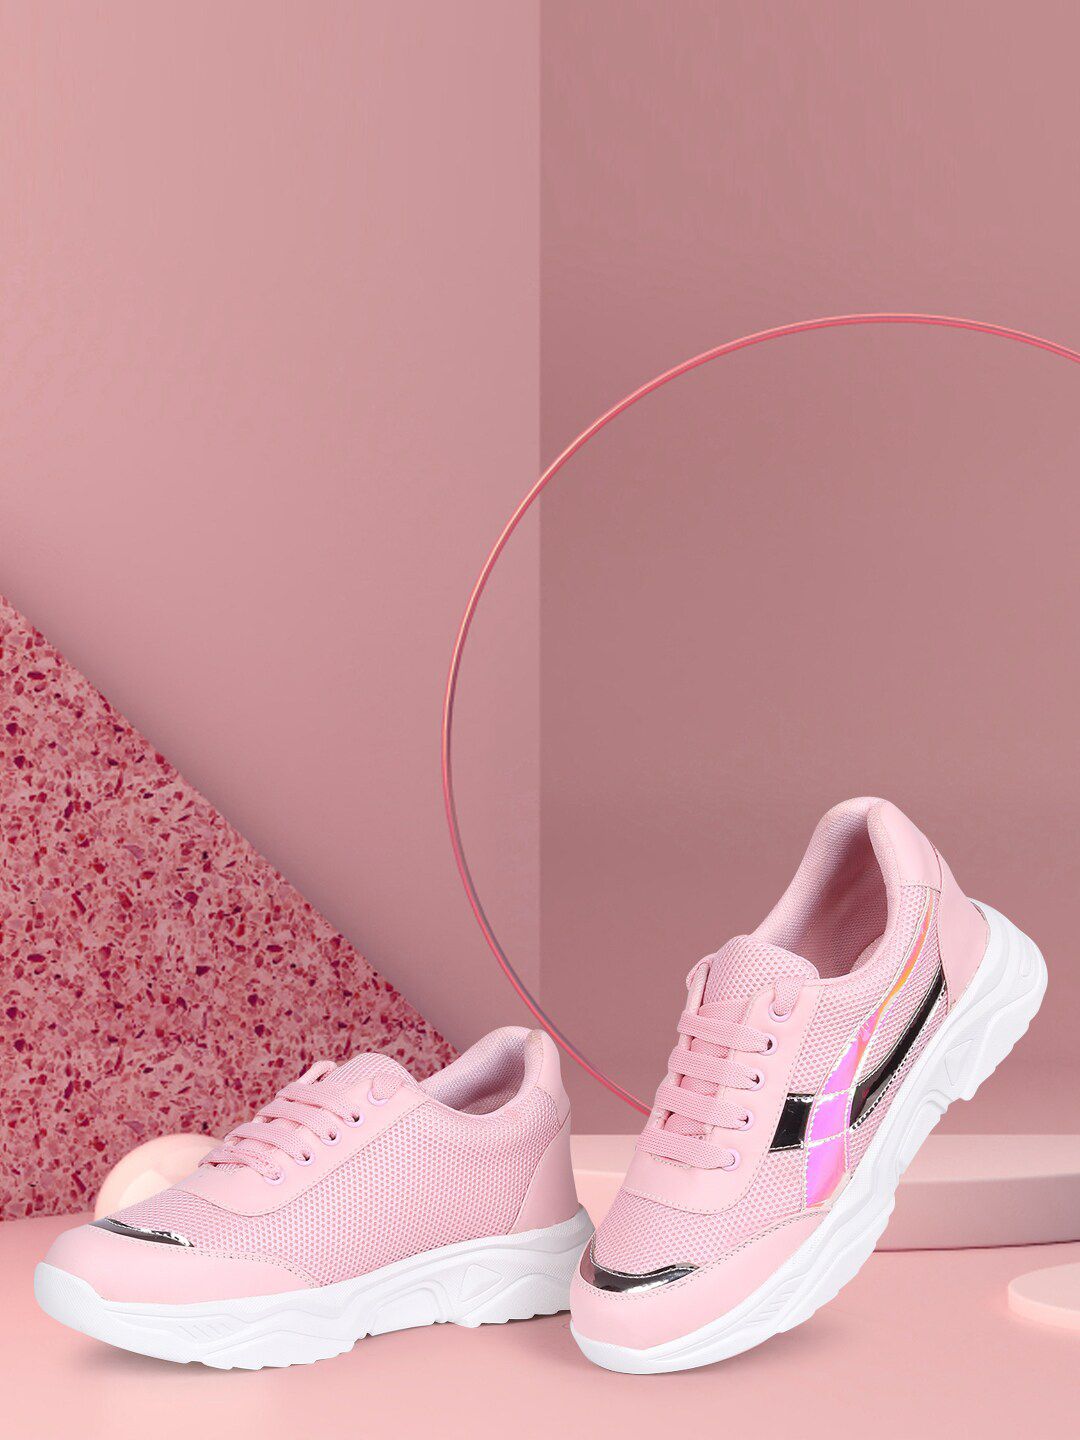 Longwalk Women Pink Mesh Walking Non-Marking Shoes Price in India